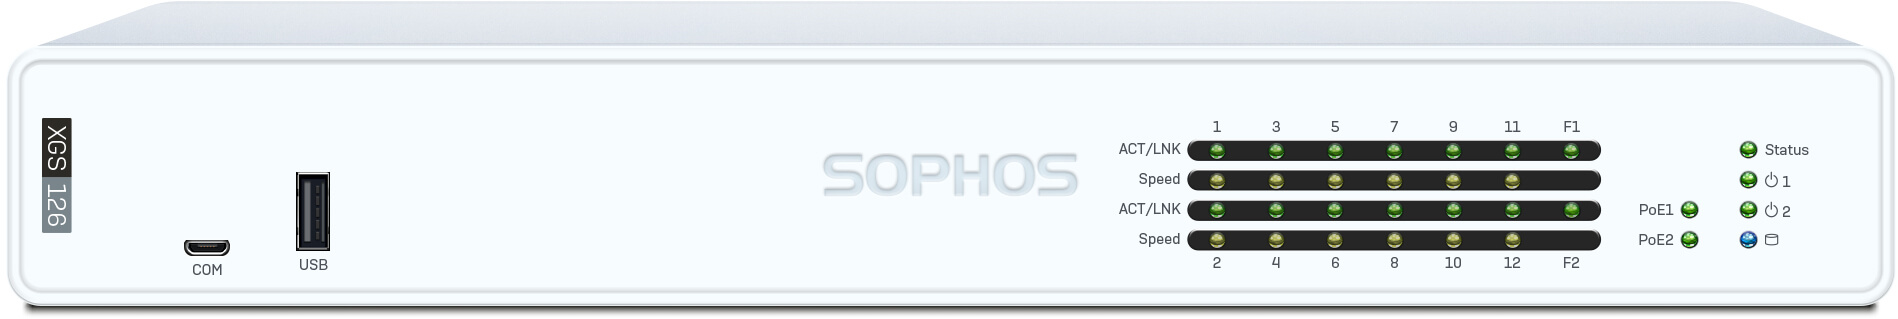 Sophos XGS 126 mit Xstream Protection